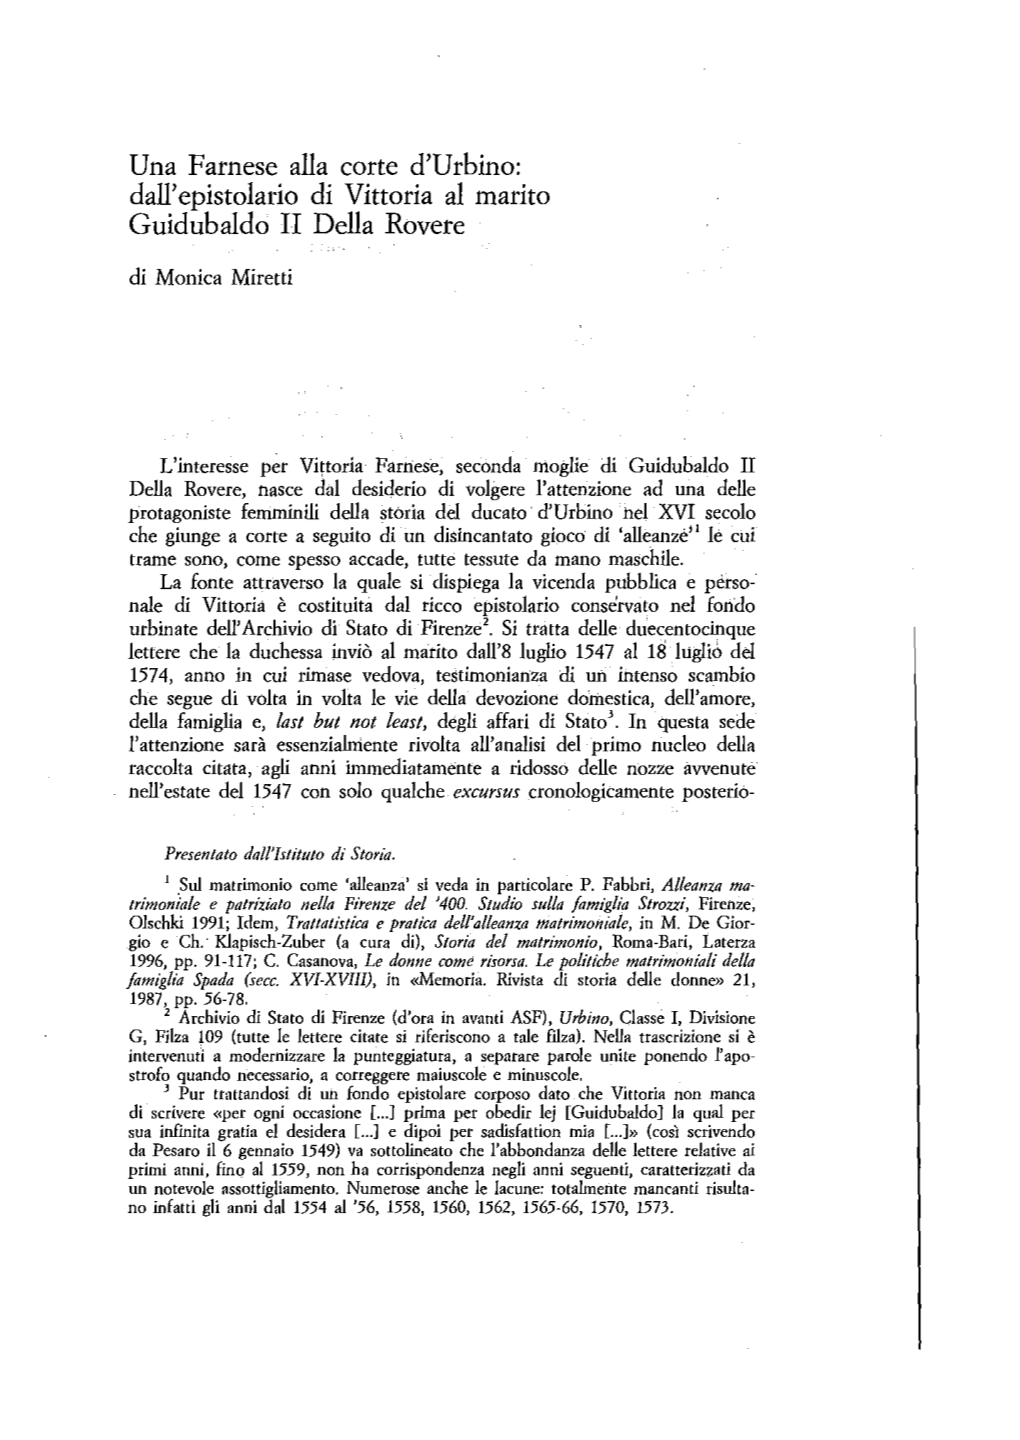 Una Farnese Alla Corte D'urbino: Dall'epistolario Di Vittoria Al Marito Guidubaldo II Della Rovere